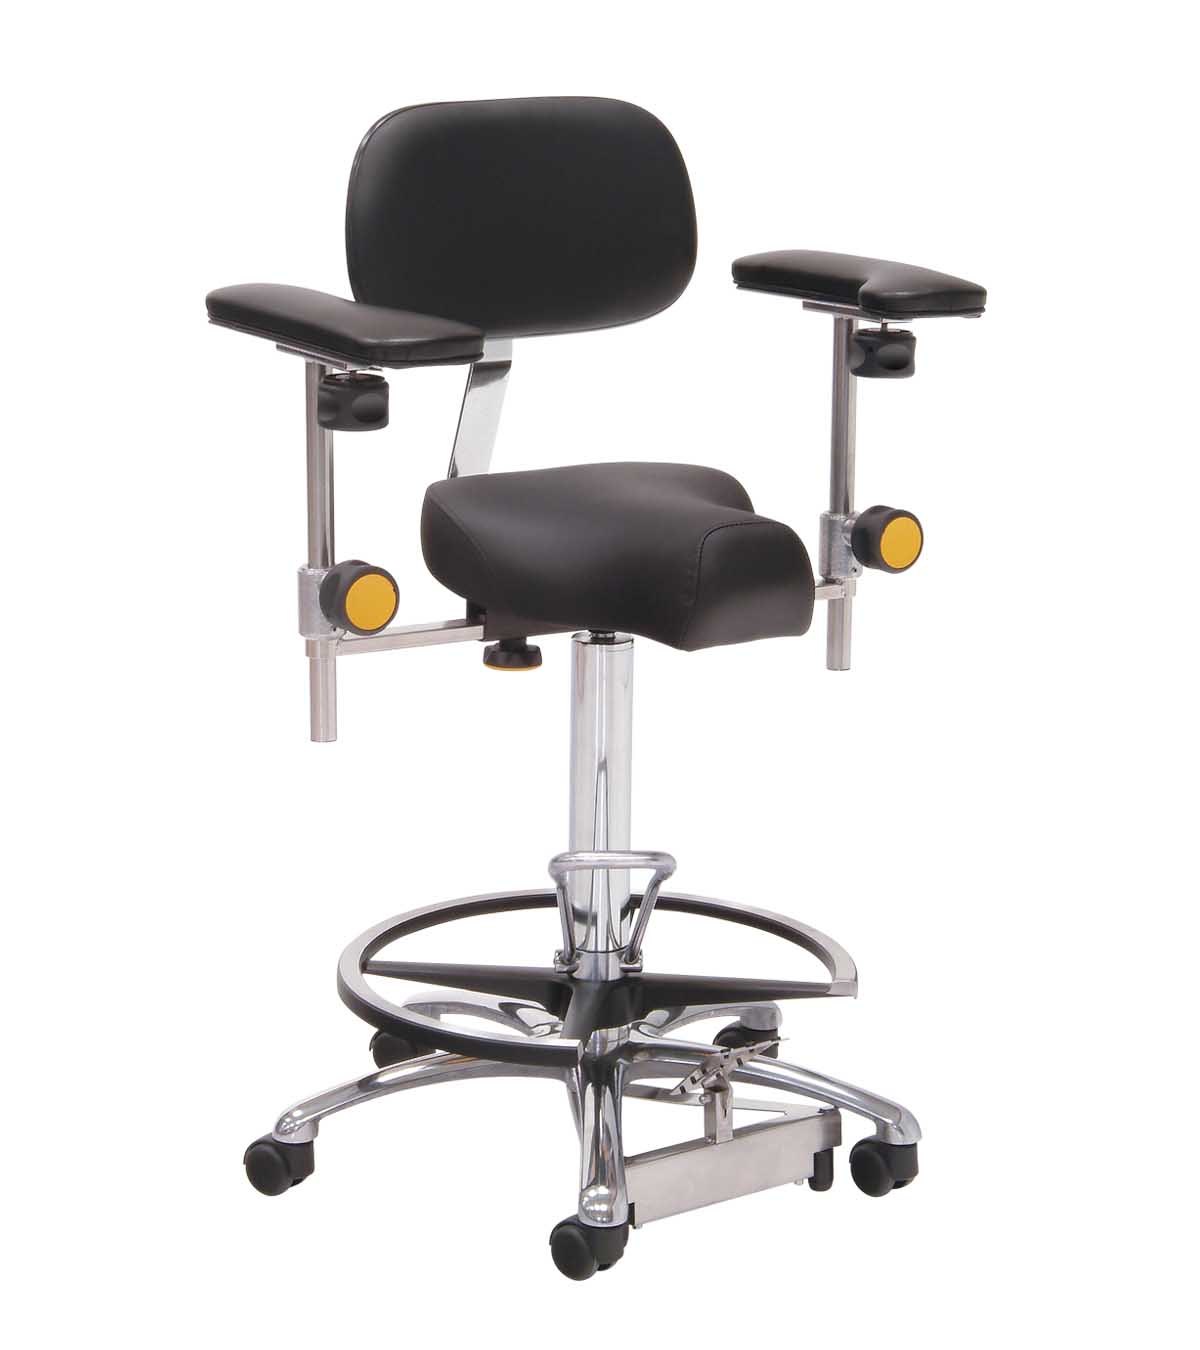 Taburete con asiento triangular, regulador de altura de pie, respaldo, apoyabrazos, reposapiés y base de aluminio. Color negro